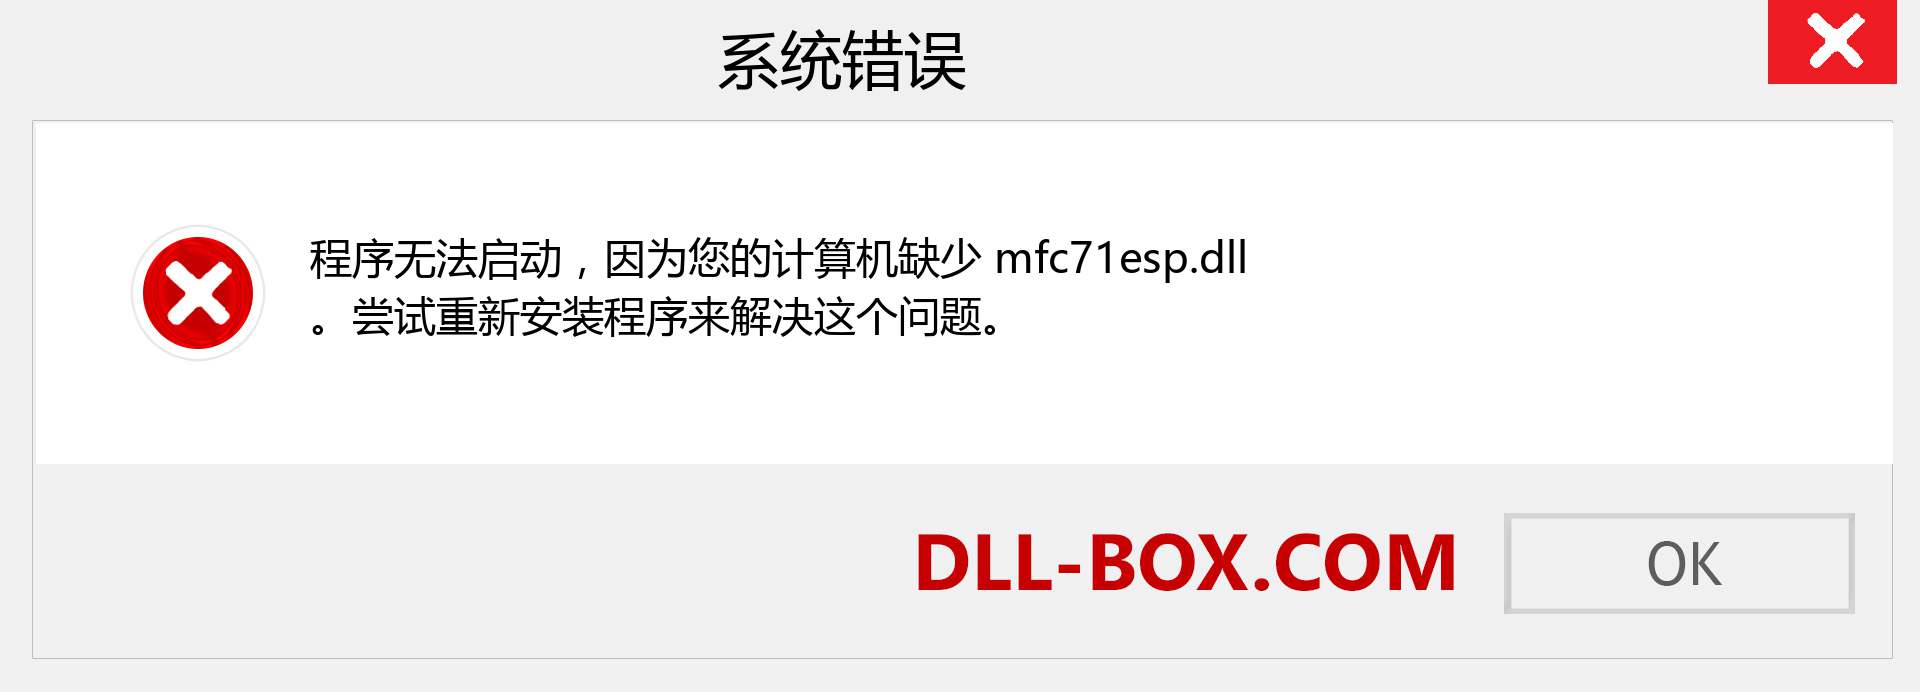 mfc71esp.dll 文件丢失？。 适用于 Windows 7、8、10 的下载 - 修复 Windows、照片、图像上的 mfc71esp dll 丢失错误